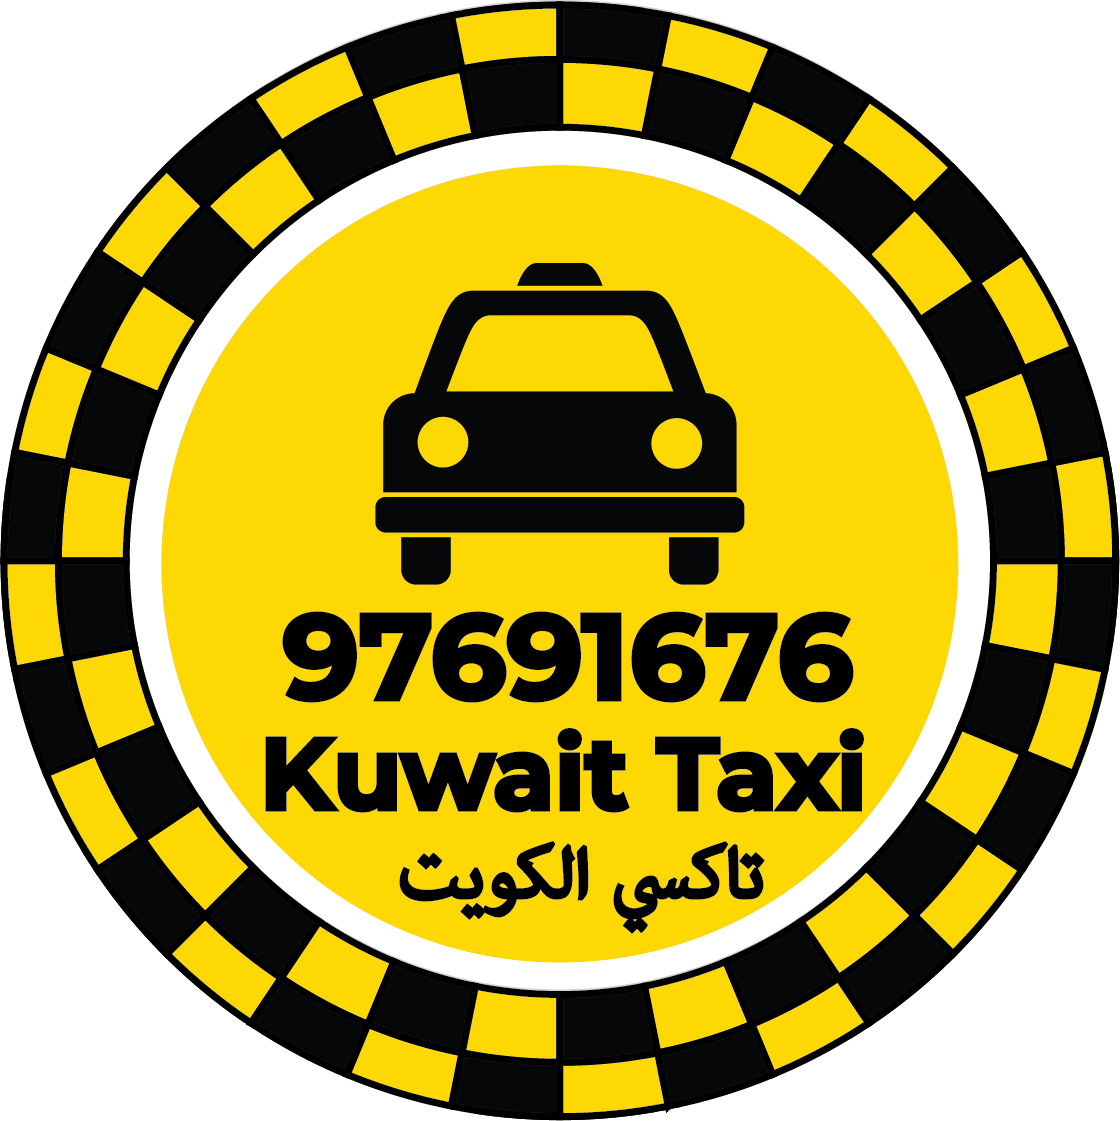 Sulaibikhat Taxi Kuwait – Taxi Number Sulaibikhat